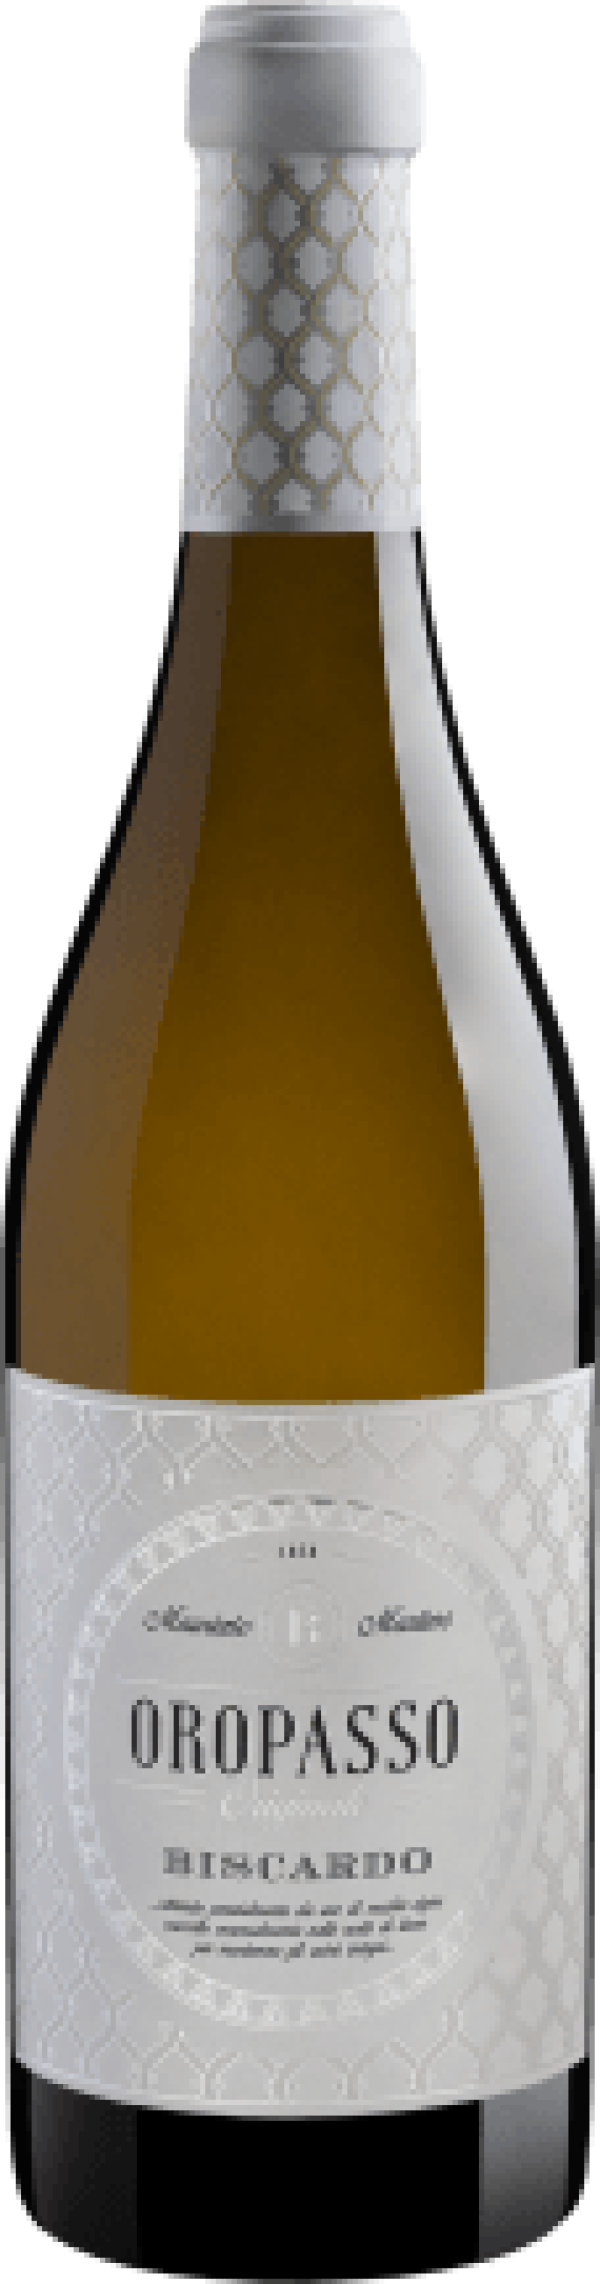 Biscardo Oropasso Originale Garganega-Chardonnay Veneto IGT 2020